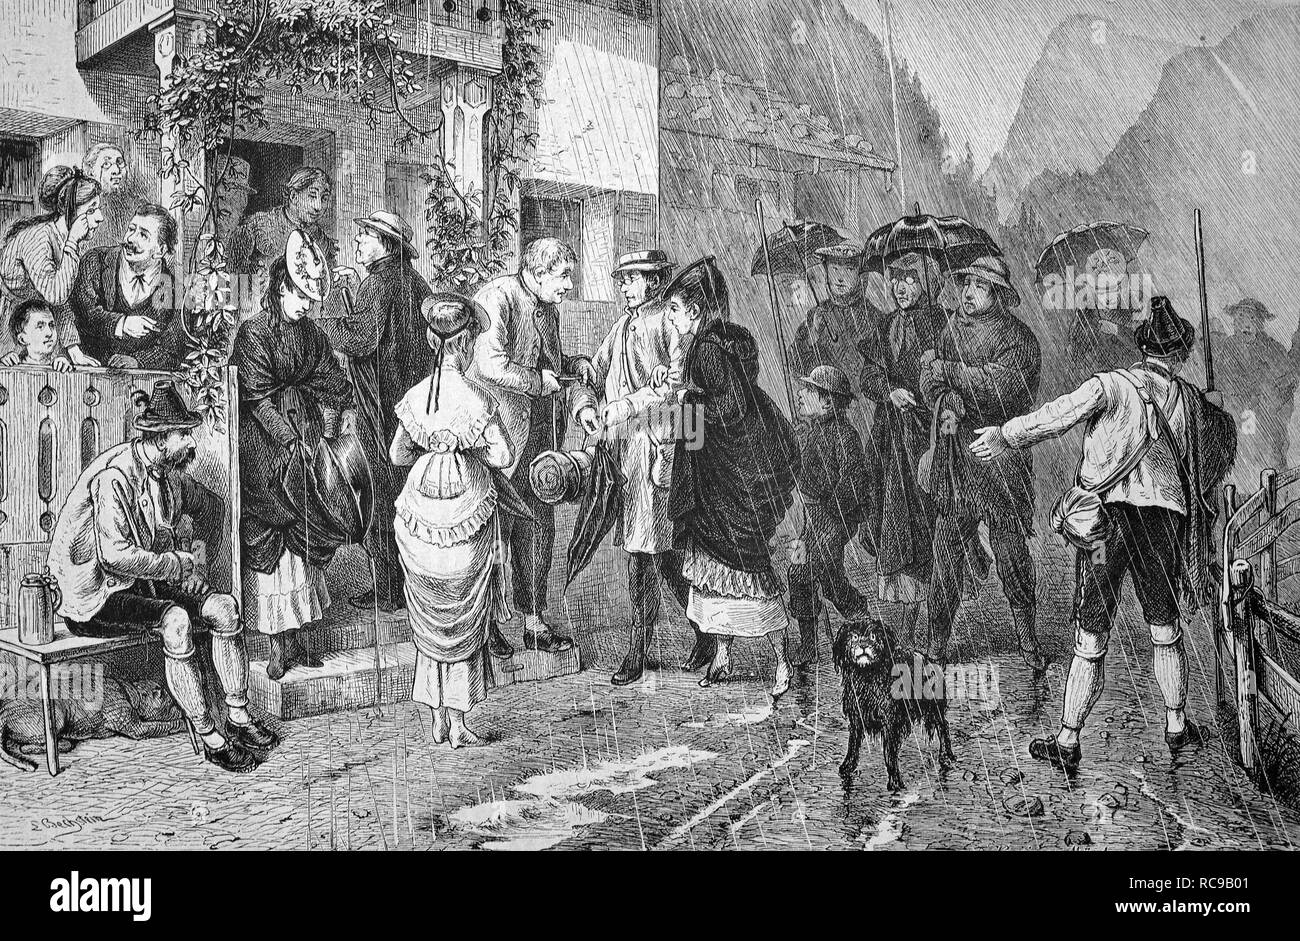 Un jour de pluie dans les Alpes bavaroises, Bavière, Allemagne, historique de la gravure sur bois, ca. 1880 Banque D'Images